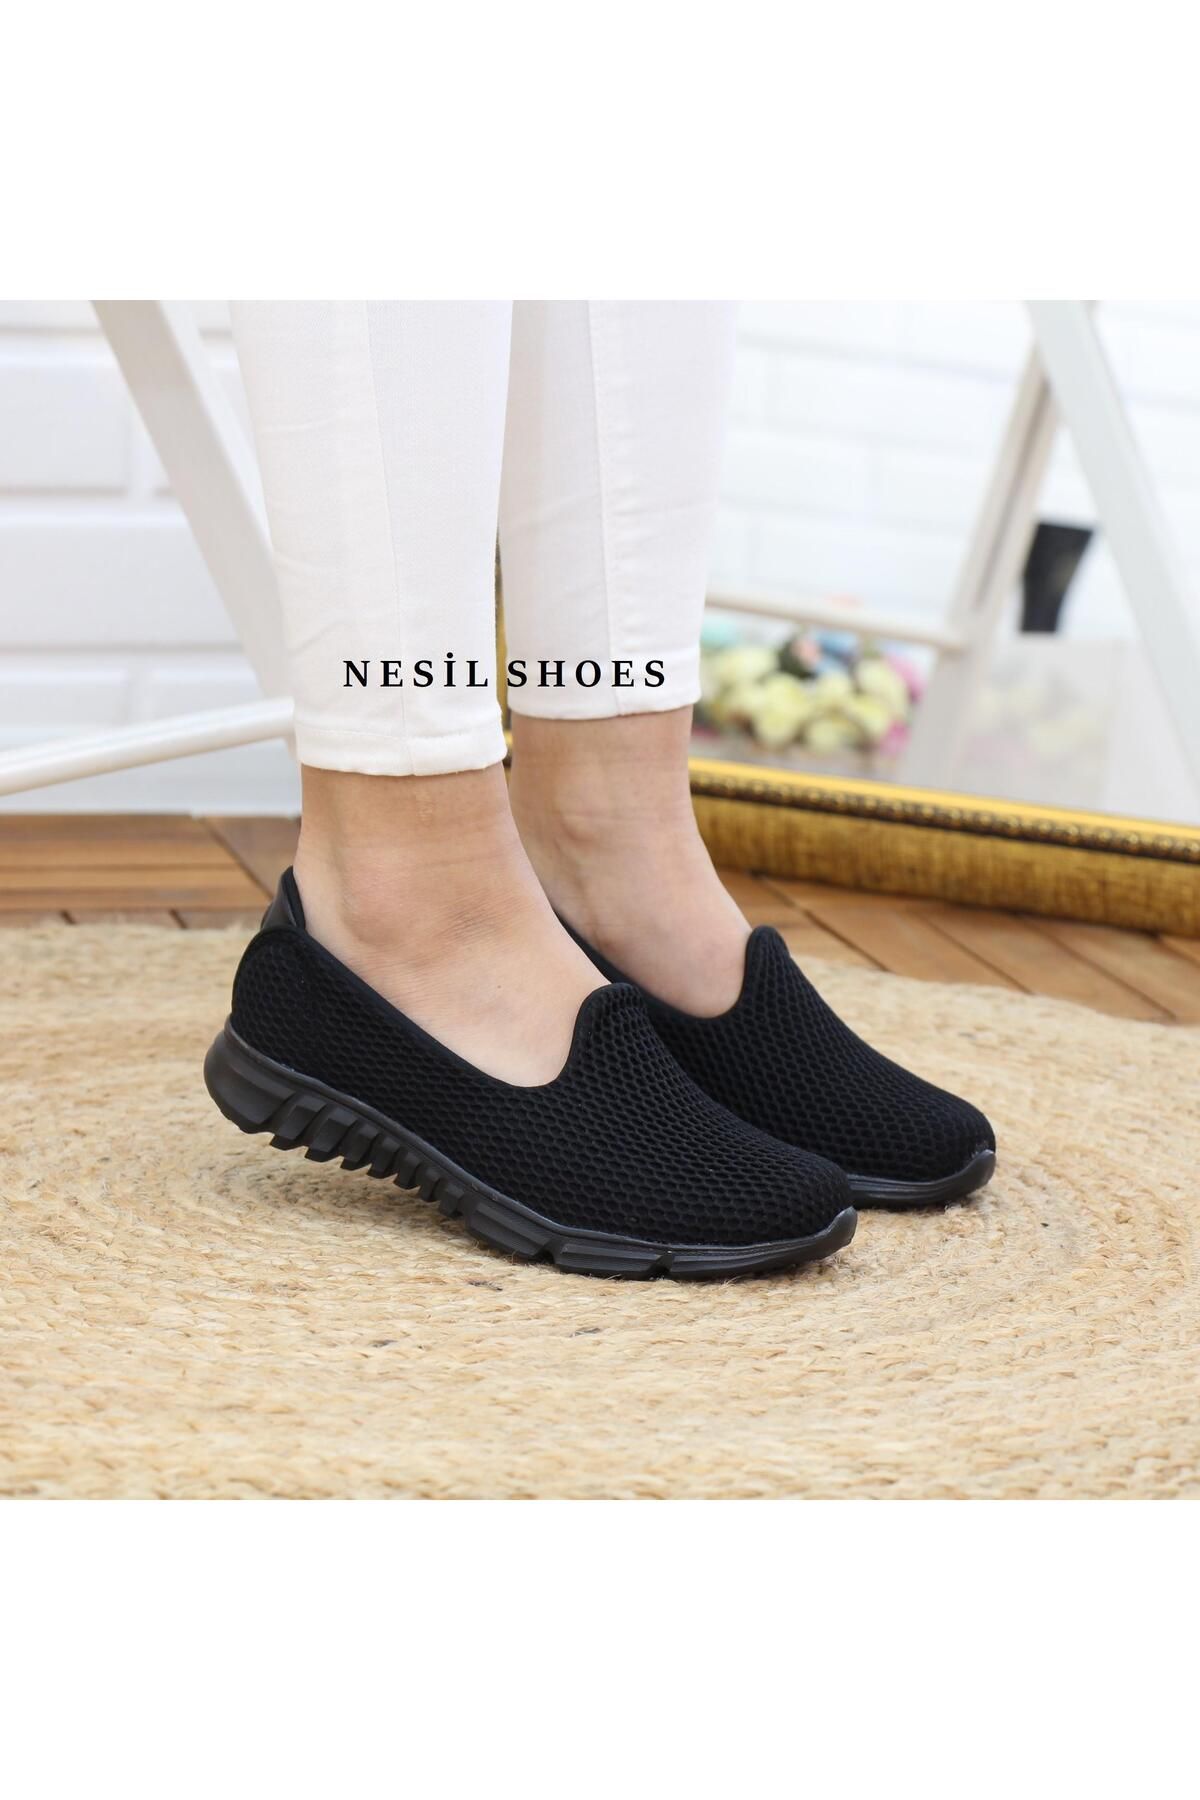 Nesil Shoes Dvm 901 Siyah Anatomik Esnek Kadın Yürüyüş Ayakkabısı